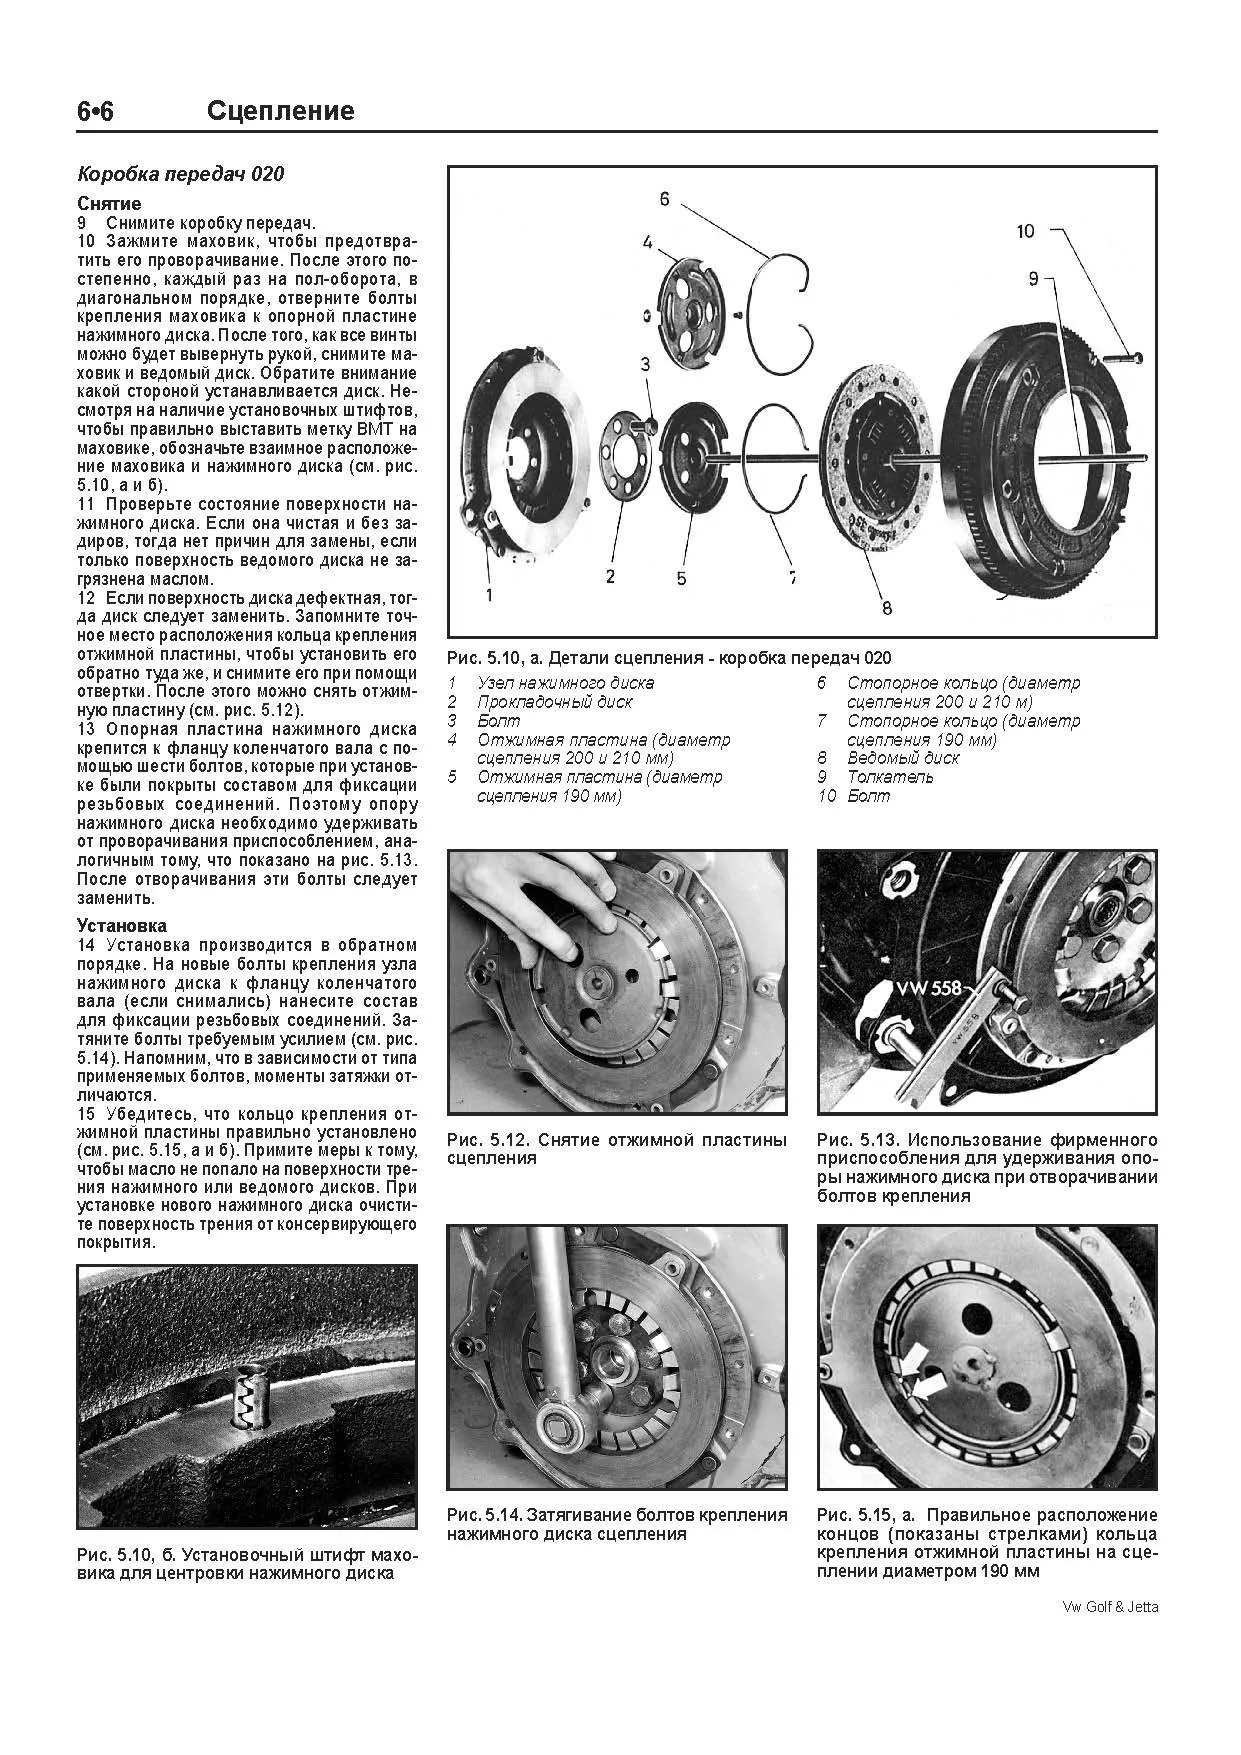 Книга Volkswagen Golf 2, Jetta 2 1984-1992 бензин, электросхемы, ч/б фото. Руководство по ремонту и эксплуатации автомобиля. Легион-Aвтодата